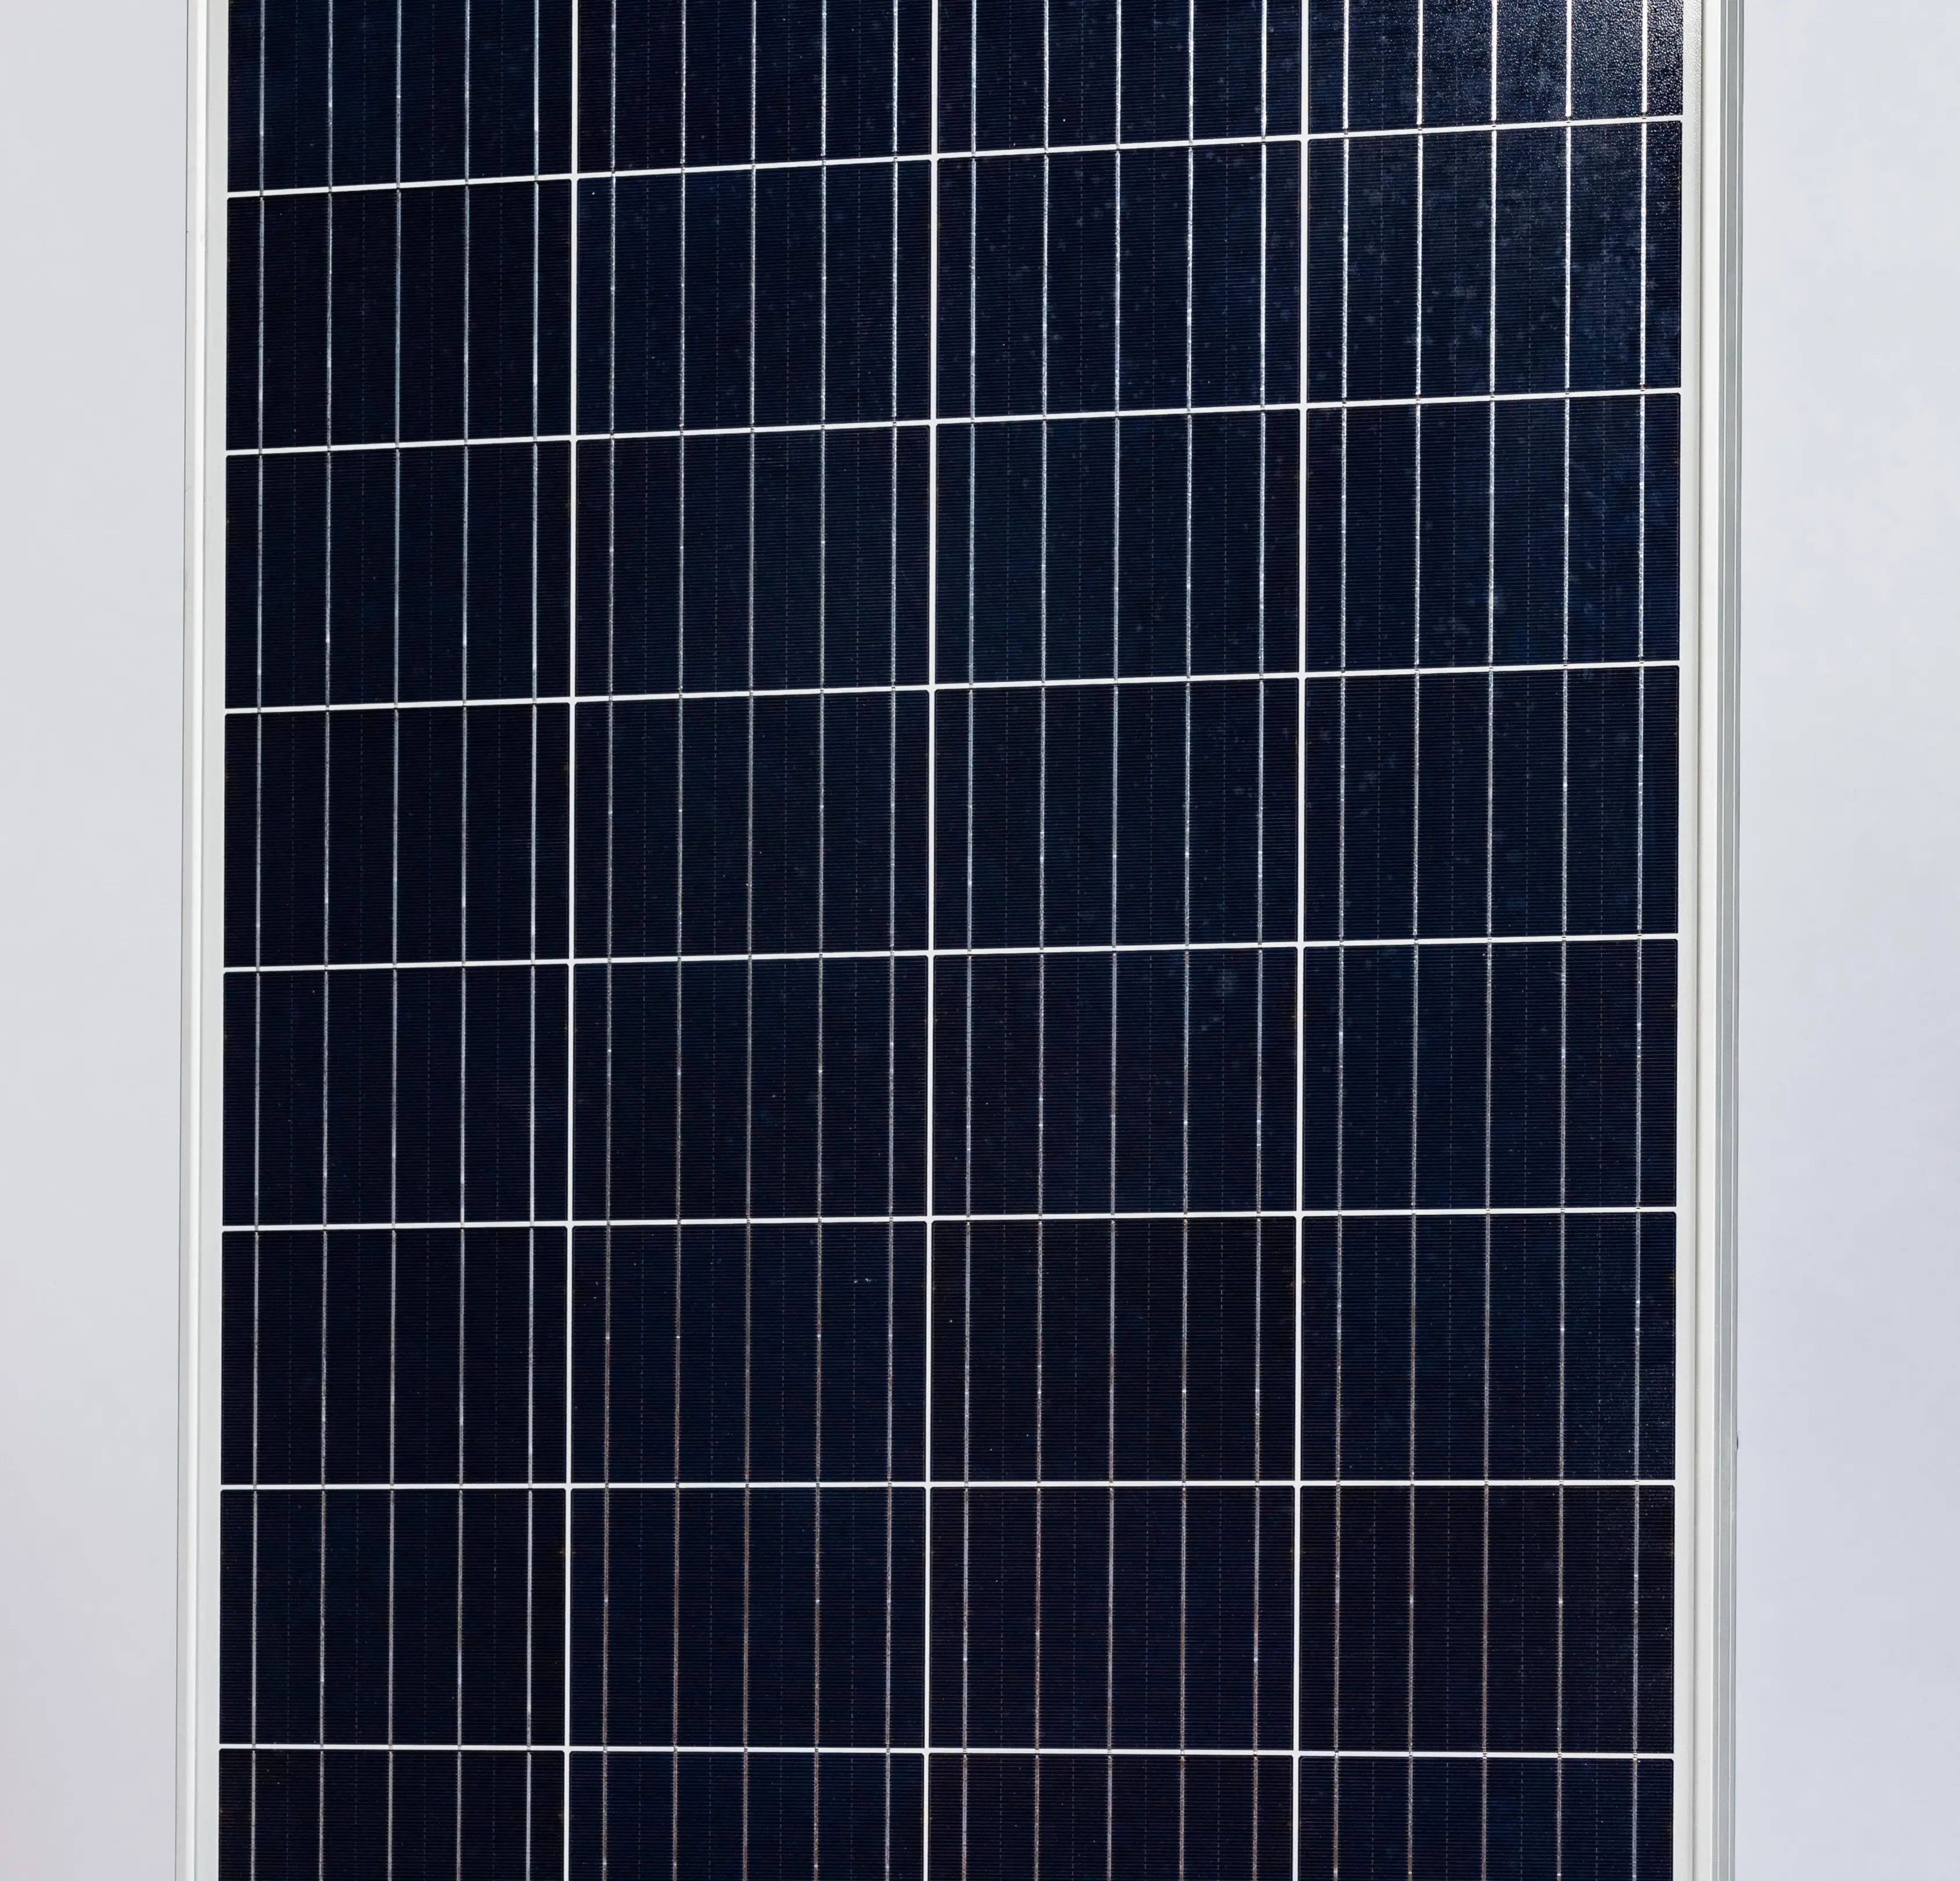 Painel solar polycrystalline com 25 anos de garantia, alta eficiência, 50w, 100w, 150w, 180w, 200w, 250w